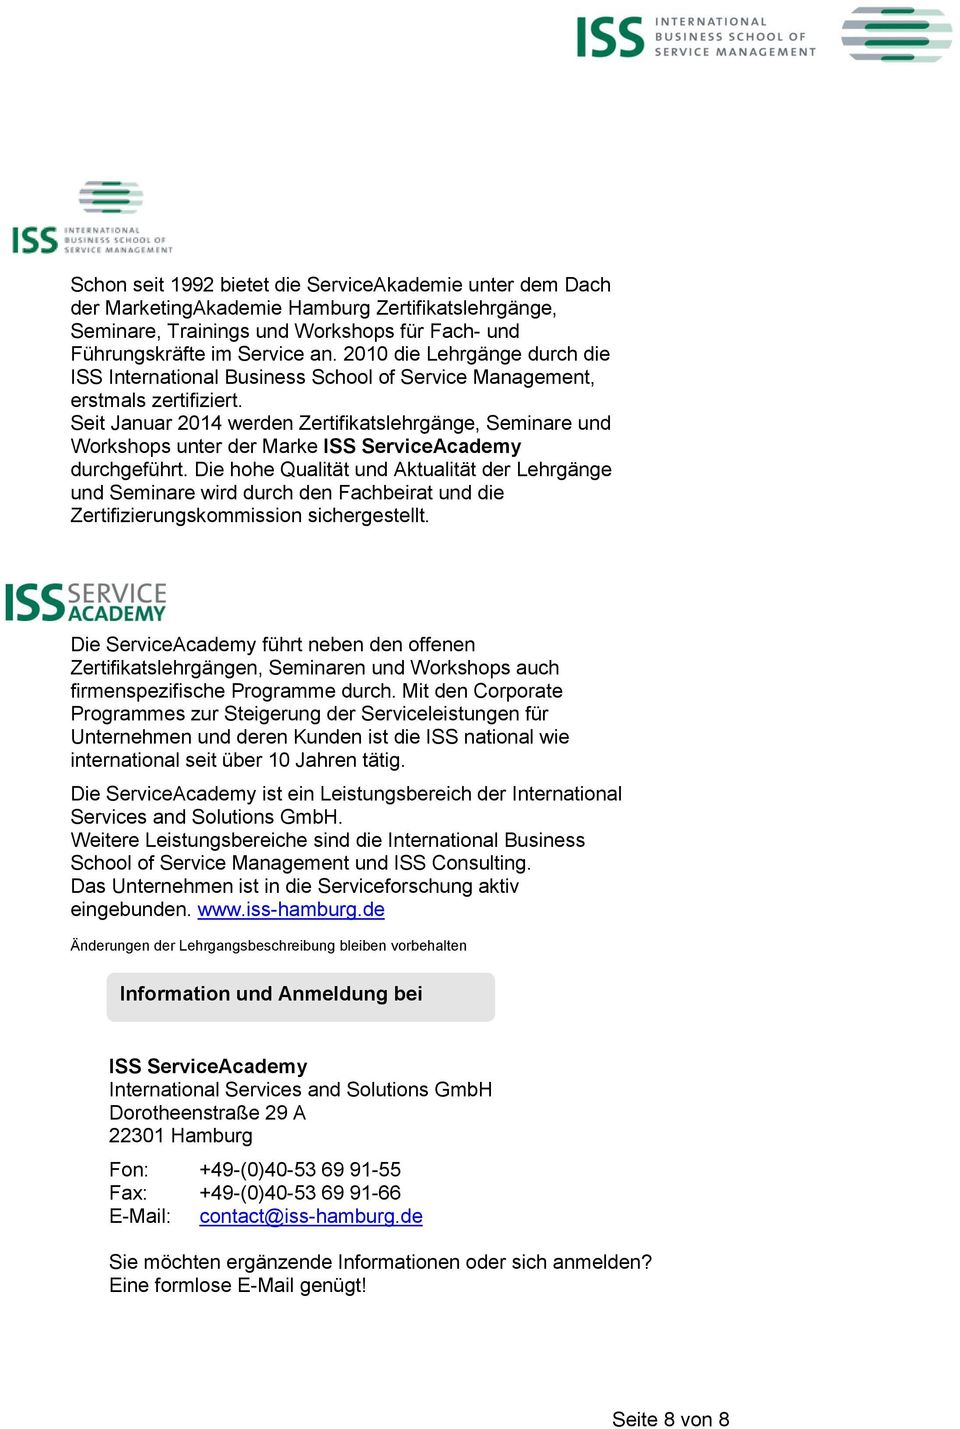 Seit Januar 2014 werden Zertifikatslehrgänge, Seminare und Workshops unter der Marke ISS ServiceAcademy durchgeführt.